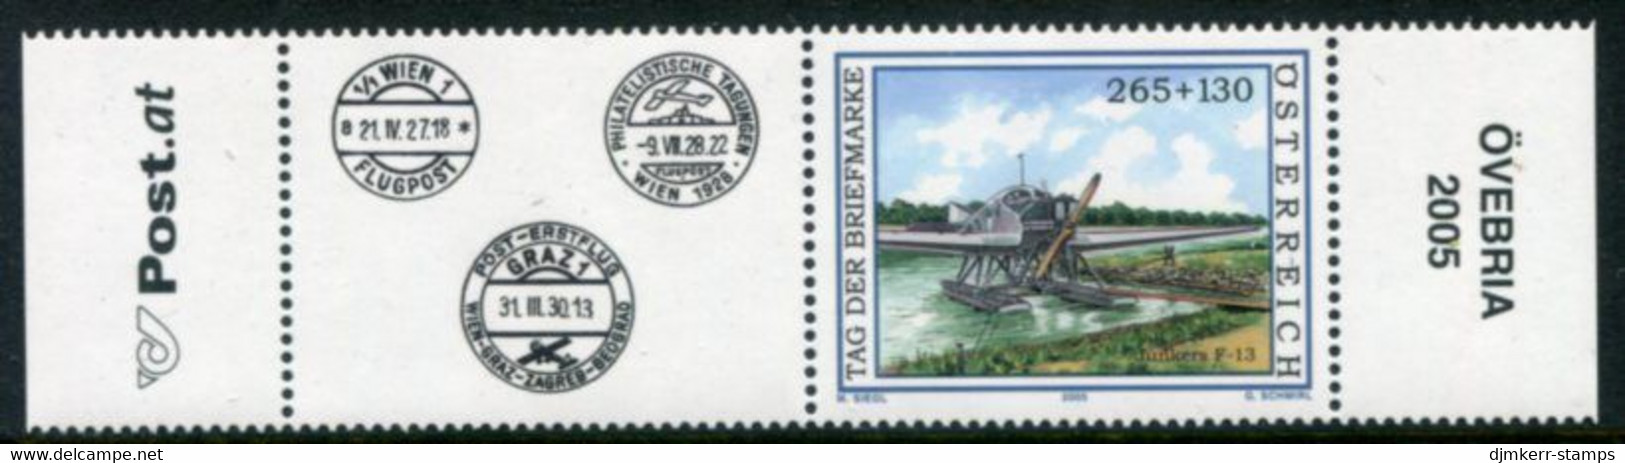 AUSTRIA  2005 Stamp Day With Label MNH / **..  Michel 2532 Zf - Ungebraucht